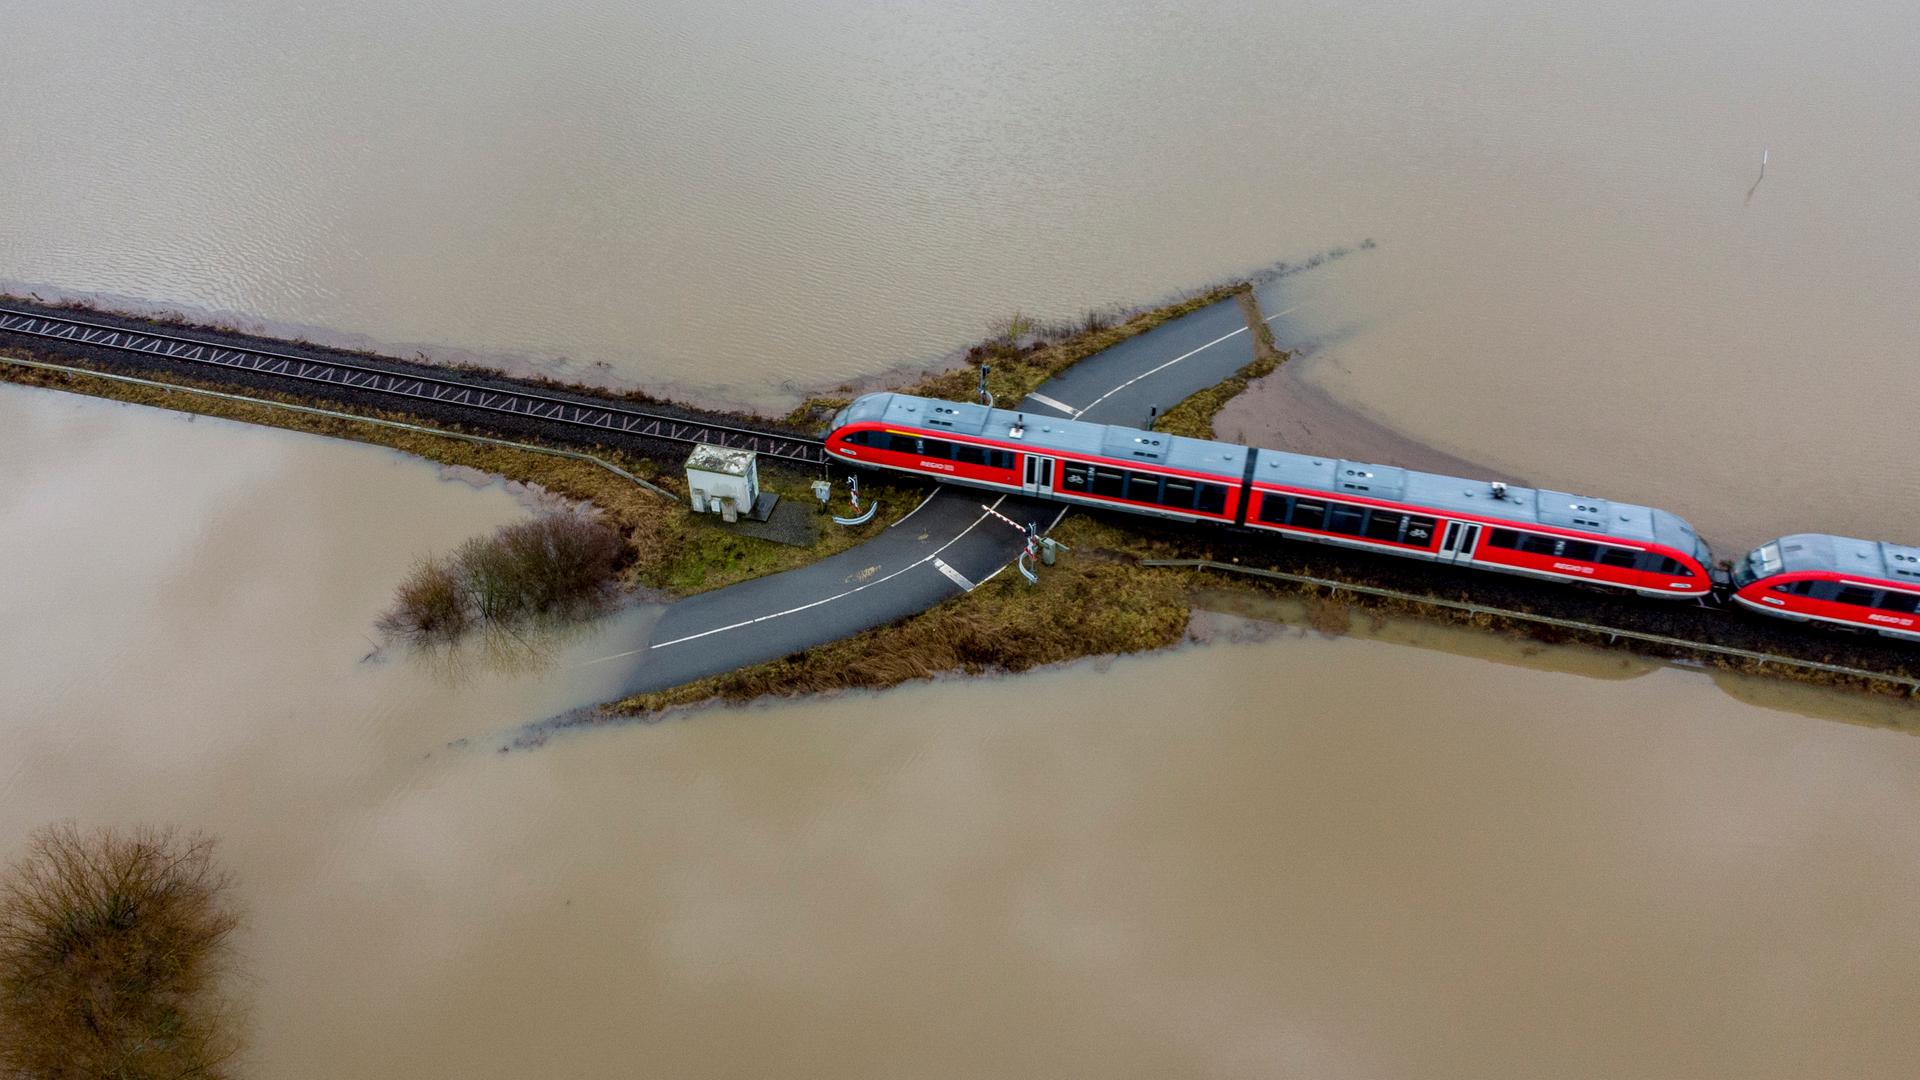 Luftaufnahme auf einen Zug umgeben von Hochwasser